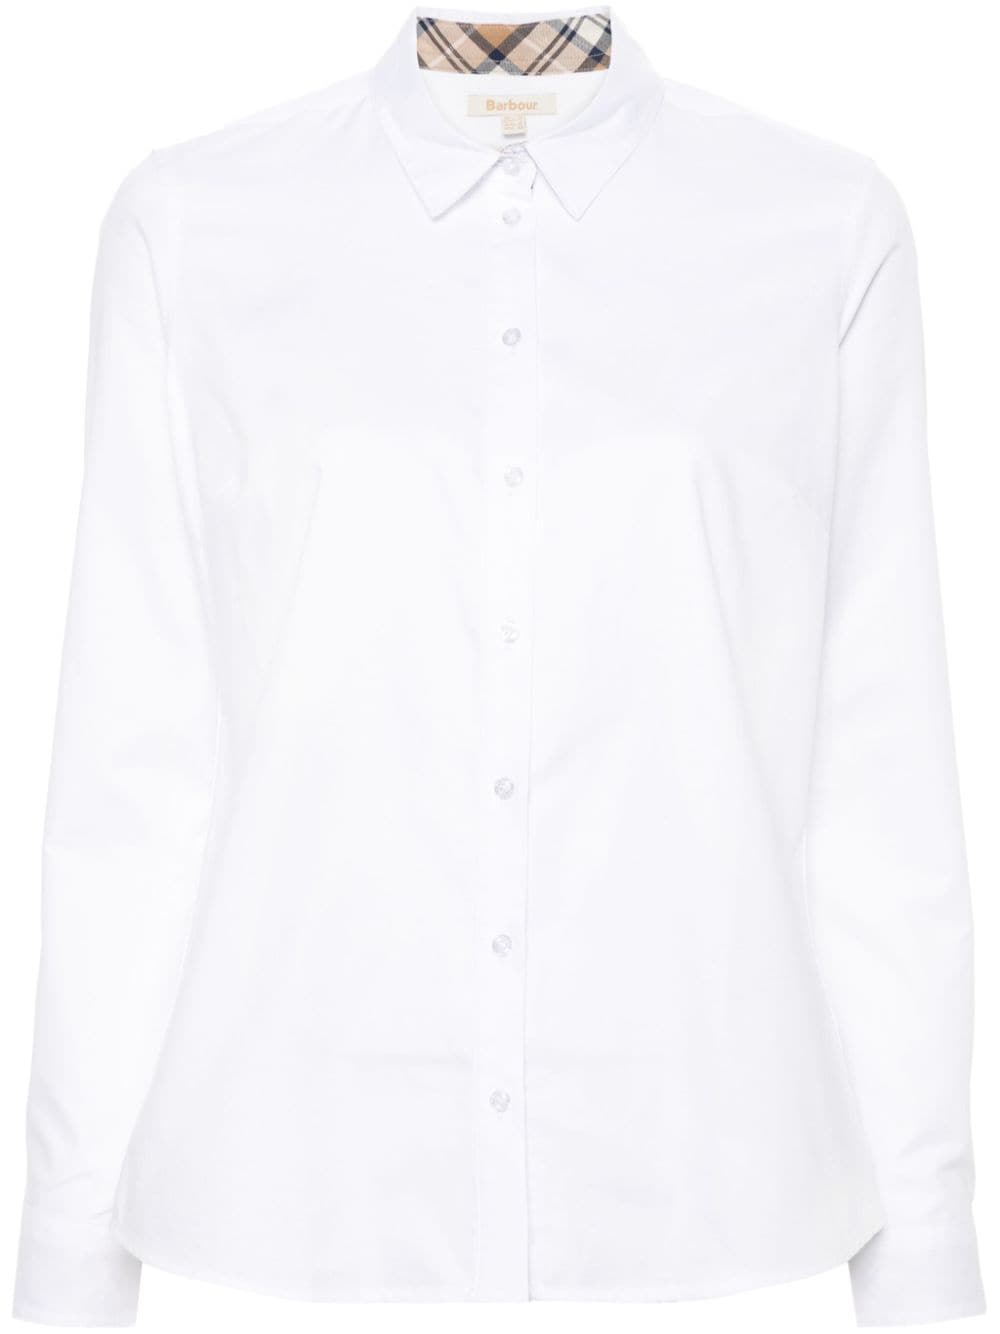 Barbour poplin cotton shirt - White von Barbour